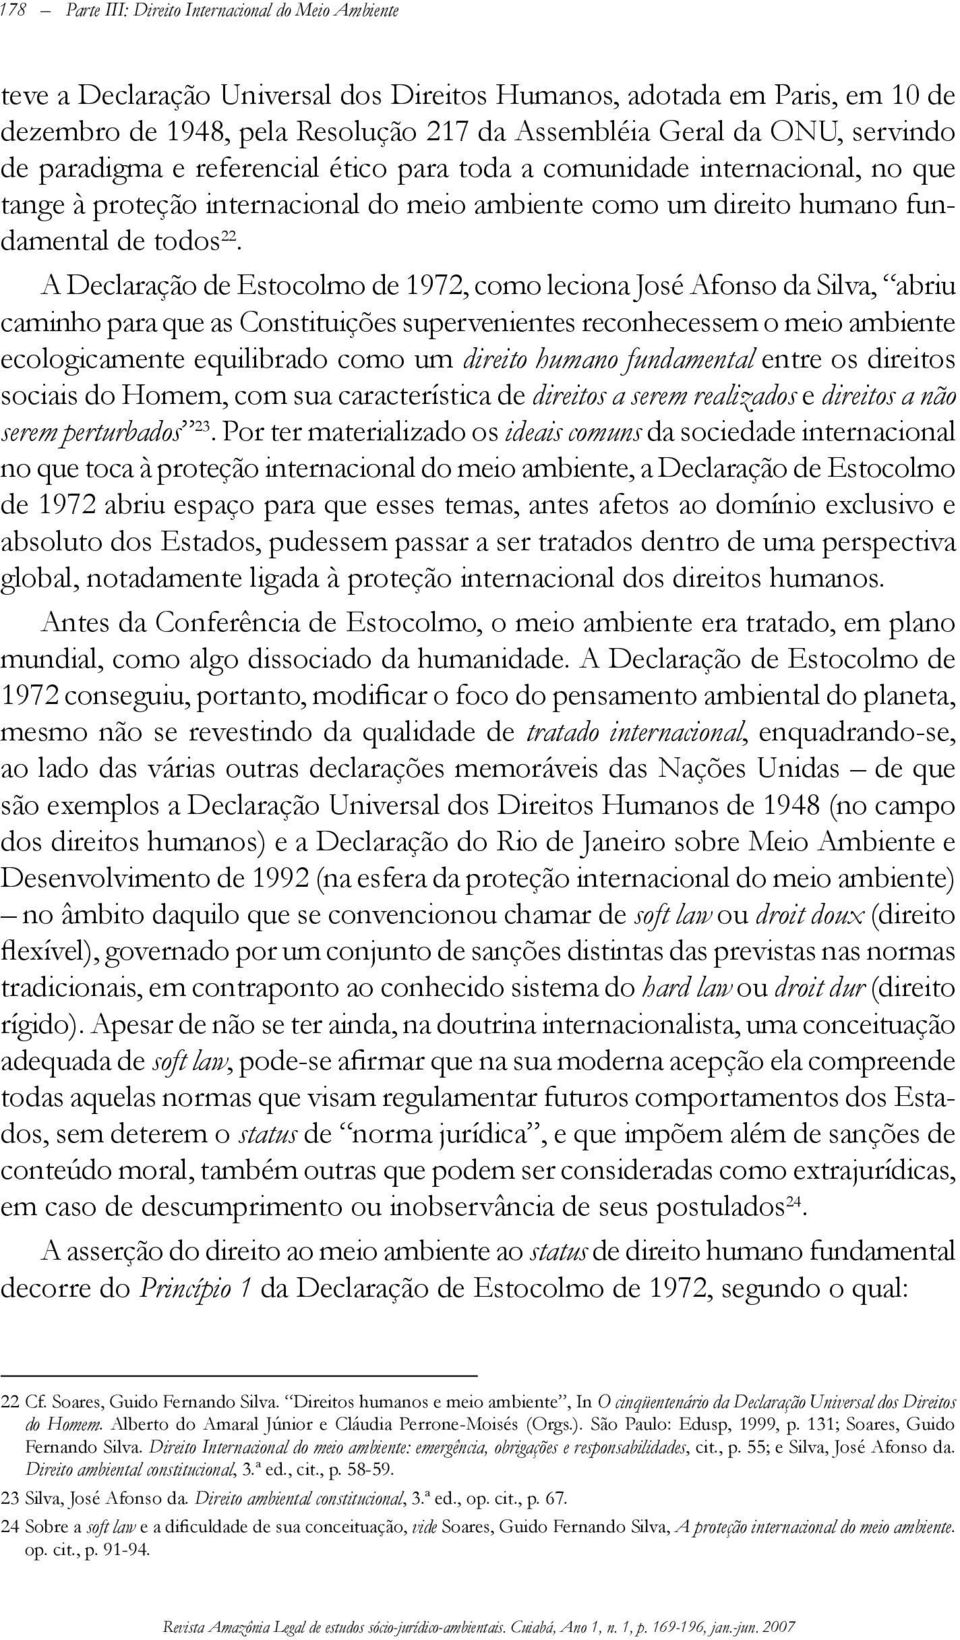 A Declaração de Estocolmo de 1972, como leciona José Afonso da Silva, abriu caminho para que as Constituições supervenientes reconhecessem o meio ambiente ecologicamente equilibrado como um direito